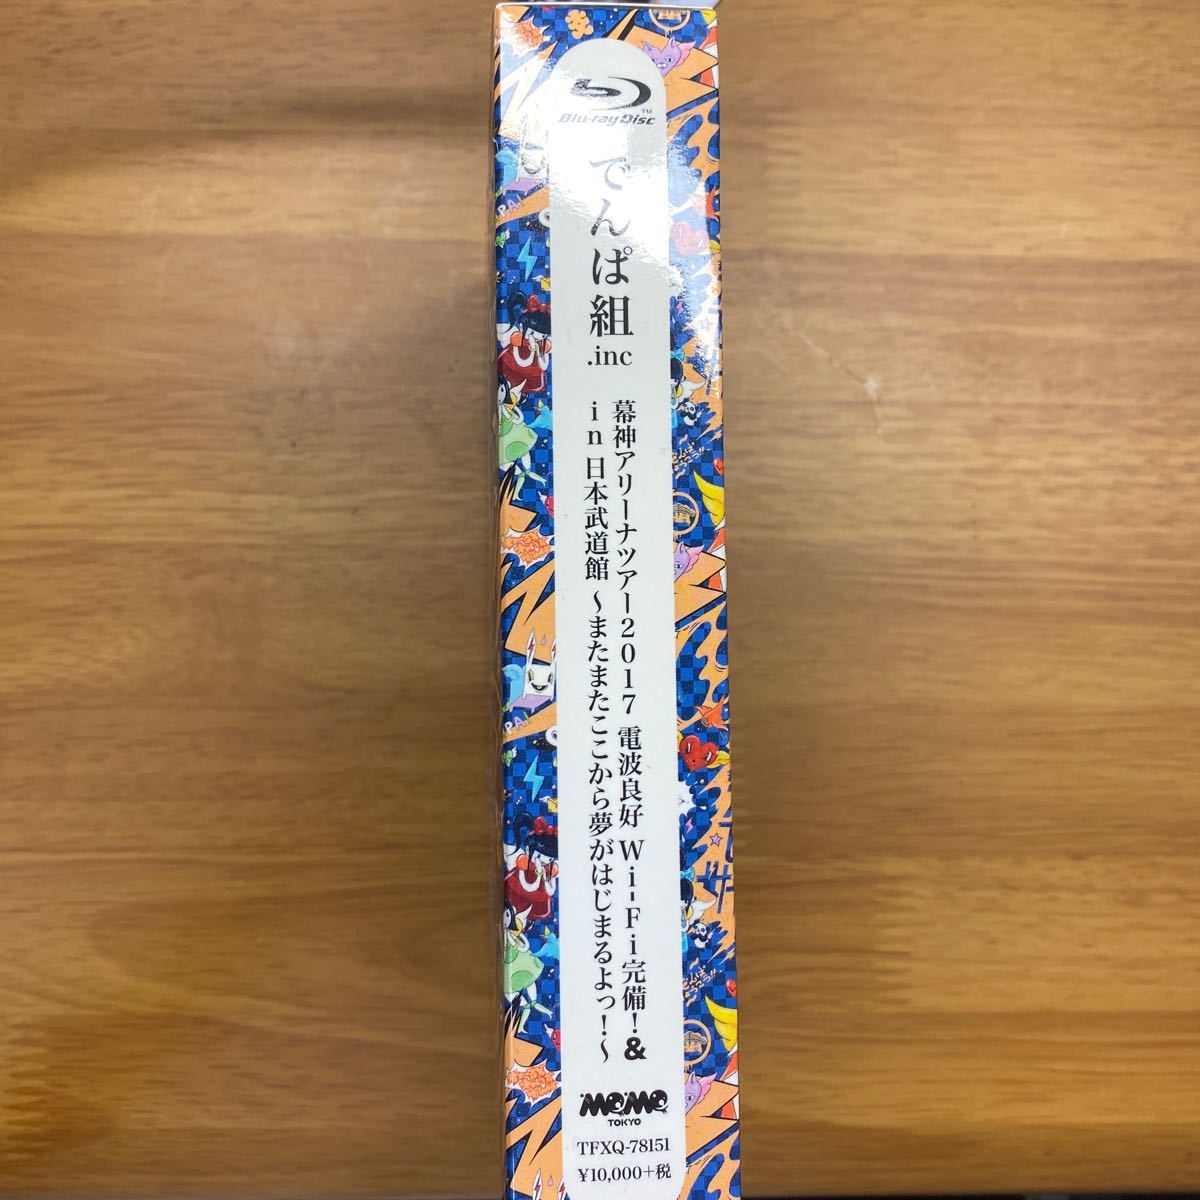 幕神アリーナツアー2017in 日本武道館 ~またまたここから夢がはじまるよっ! ~ (Blu-ray) (初回限定盤)